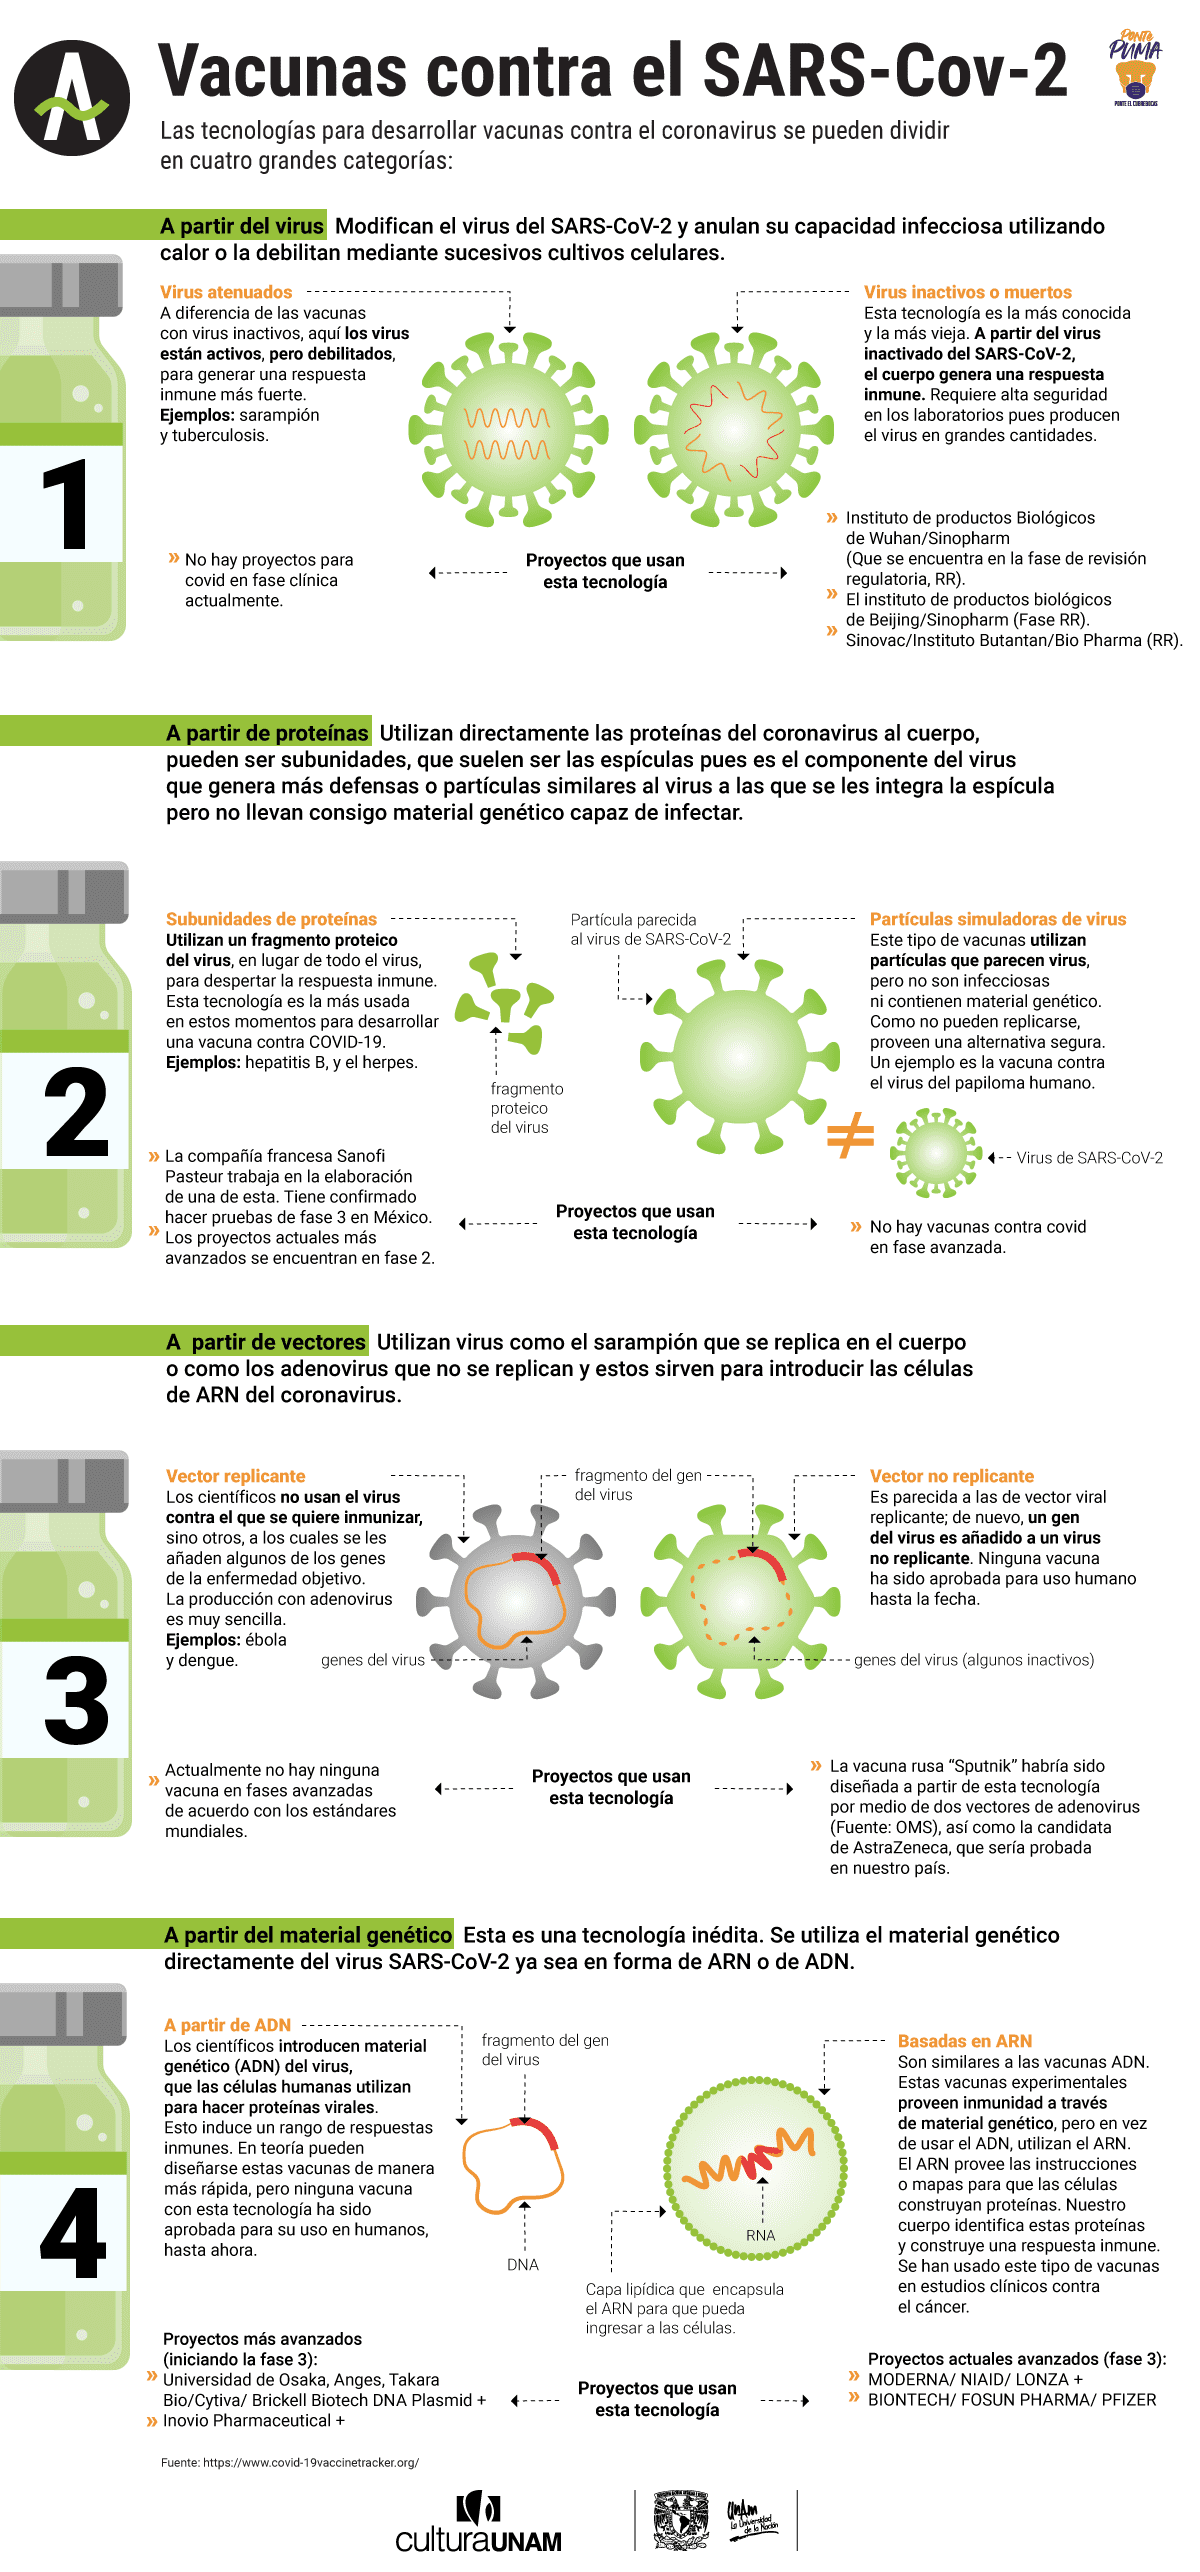 Cómo funcionan las vacunas contra covid-19